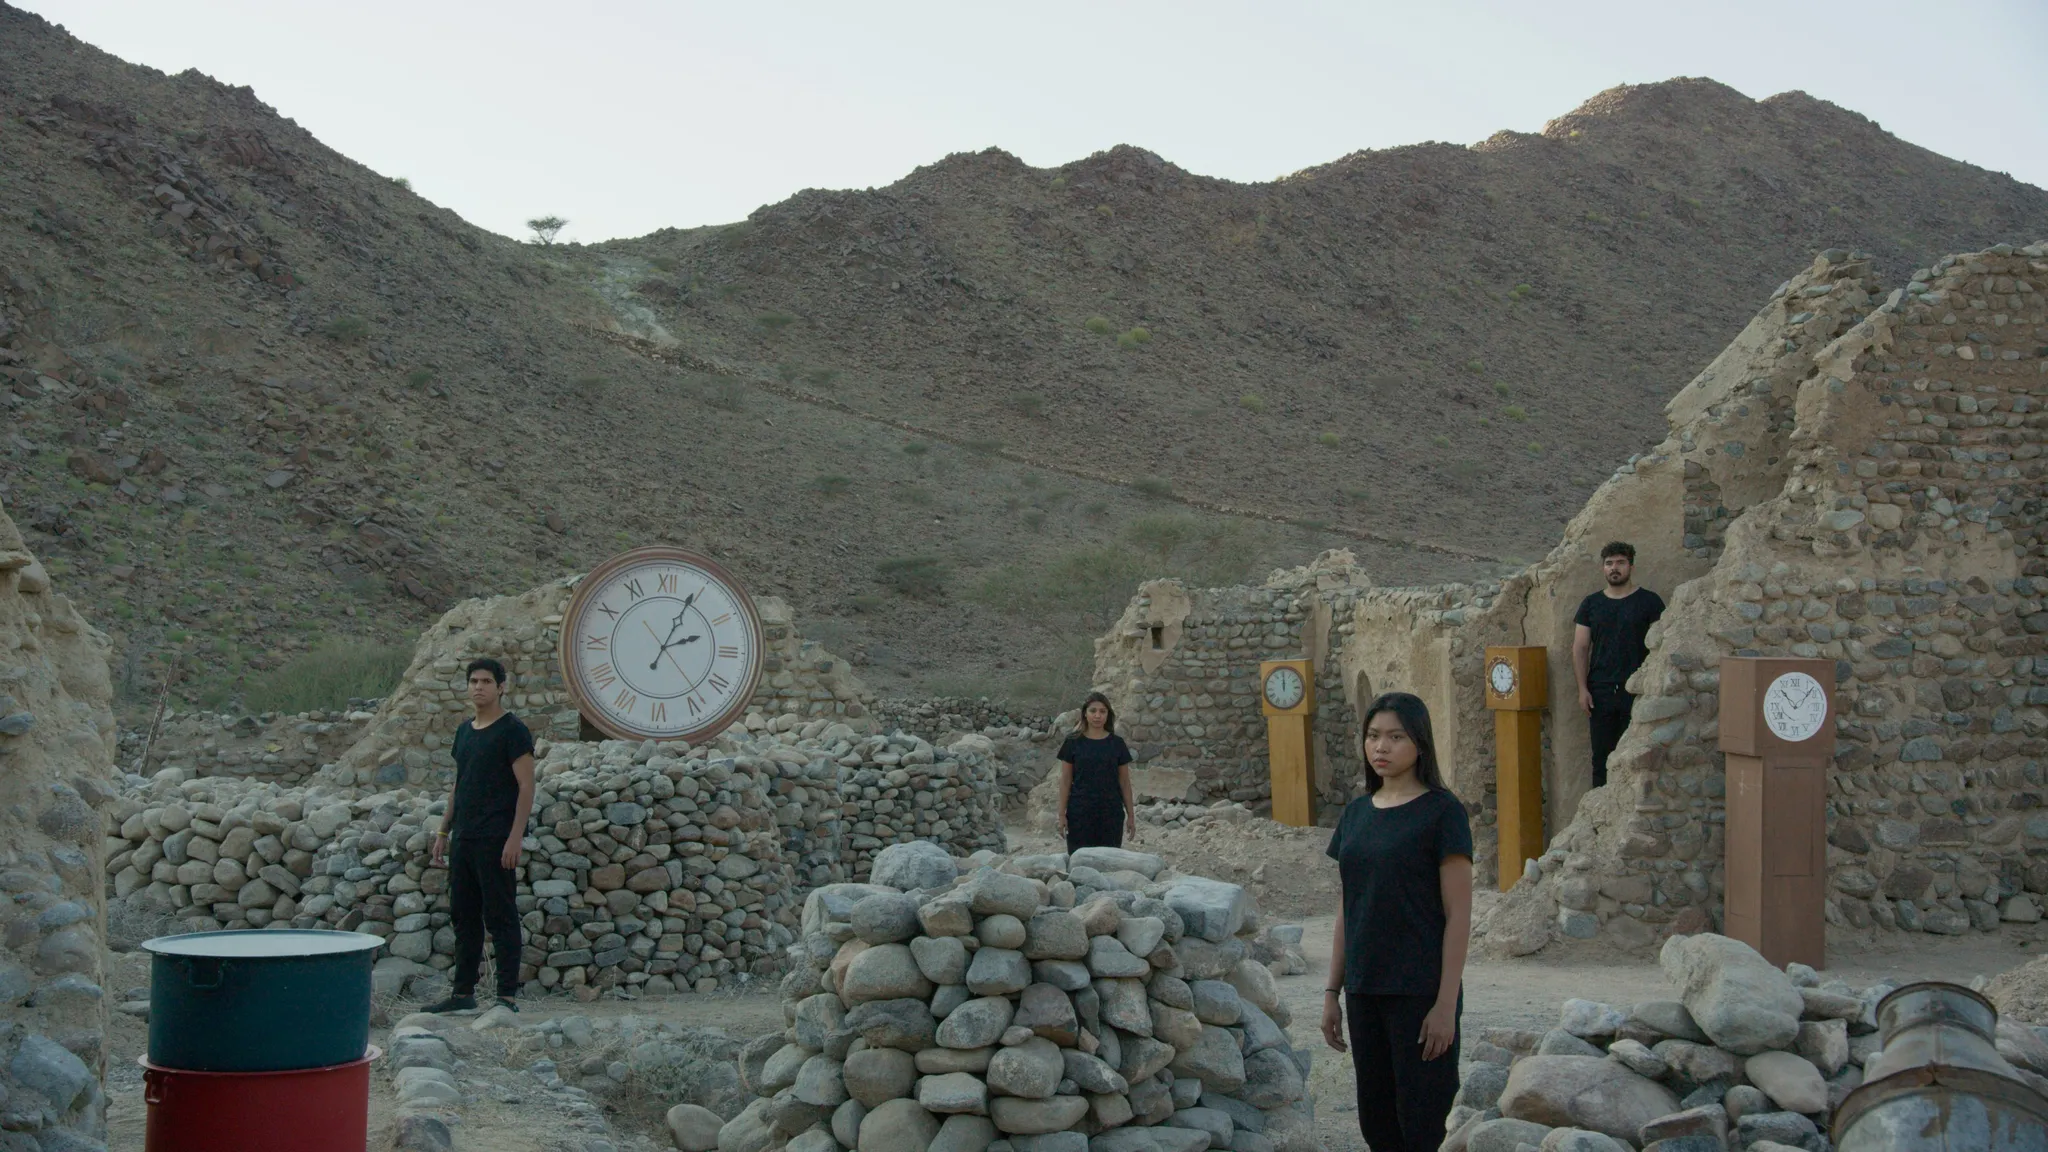 4 in het zwart geklede personen staren naar de camera, staande tussen ruïnes en grote klokken, in een verlaten rotslandschap